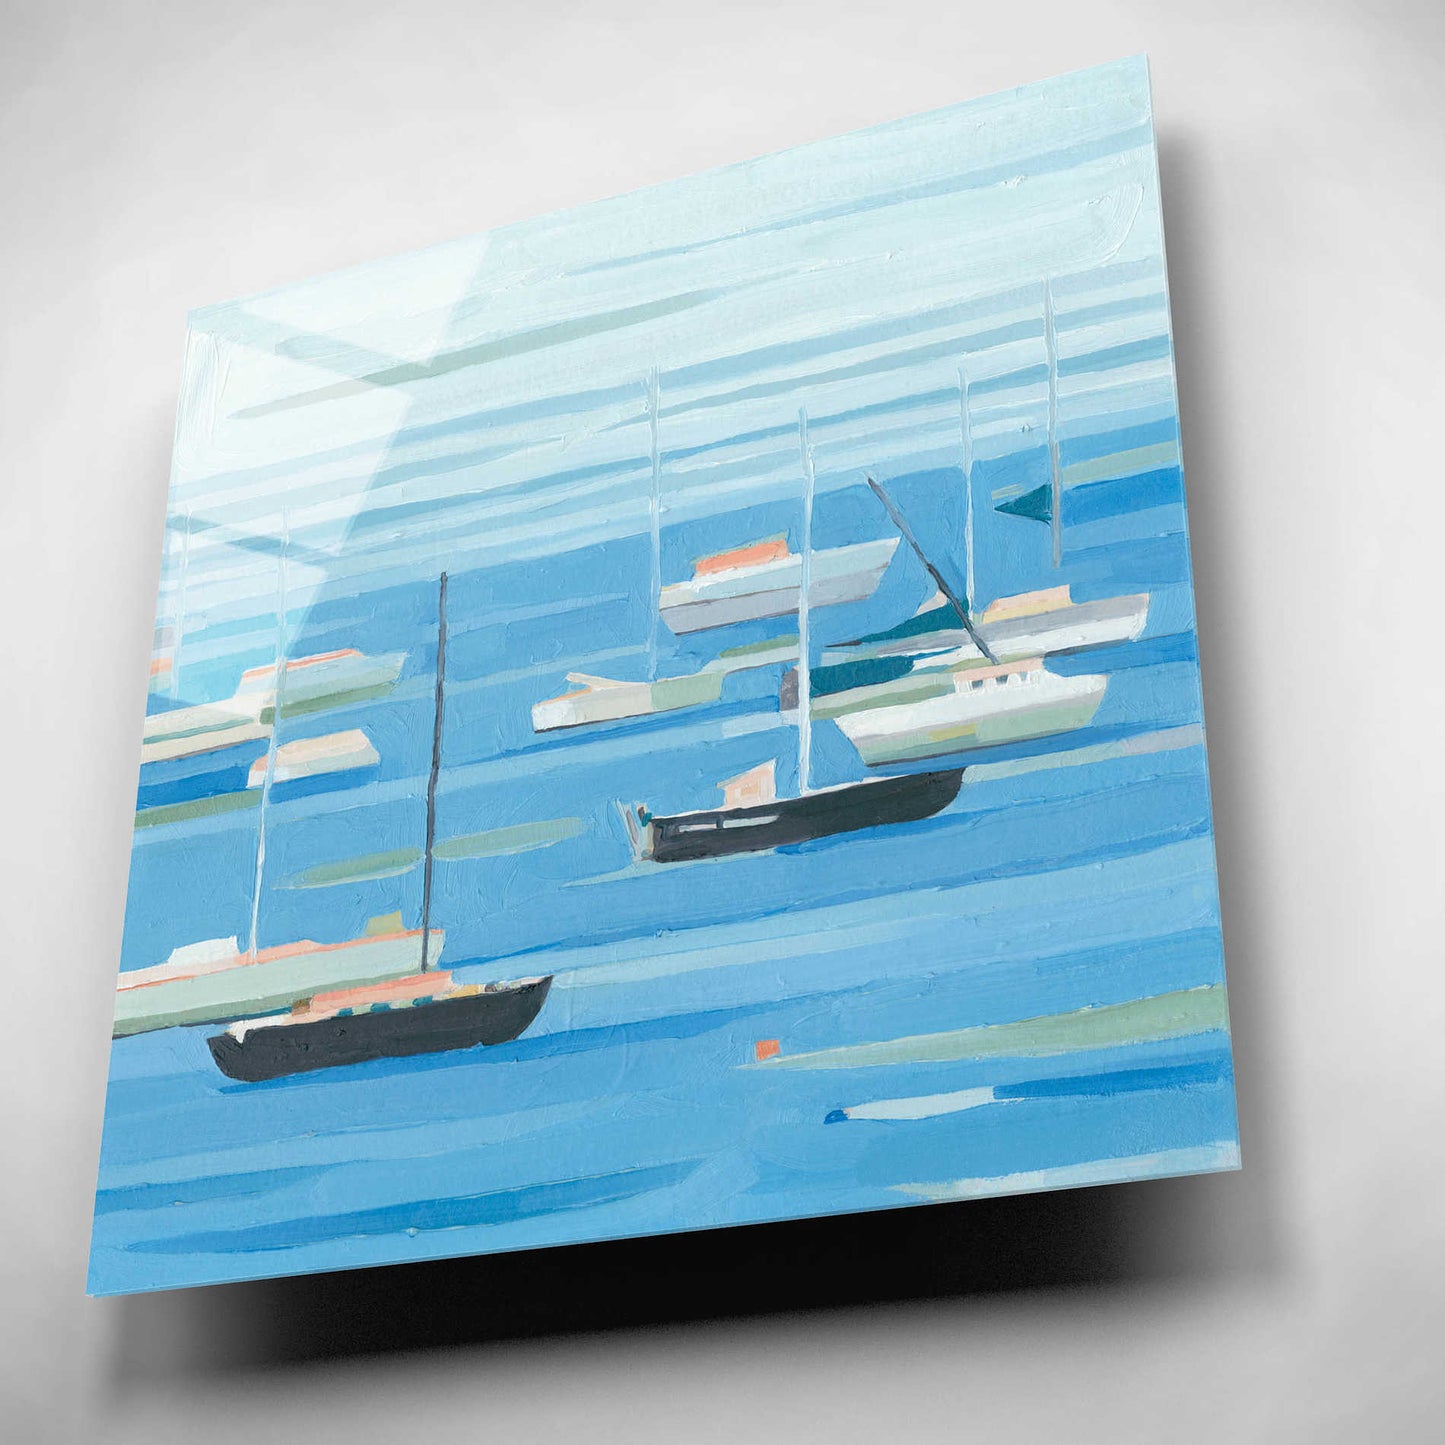 Epic Art 'Summer Regatta II' by Emma Scarvey, Acrylic Glass Wall Art,12x12